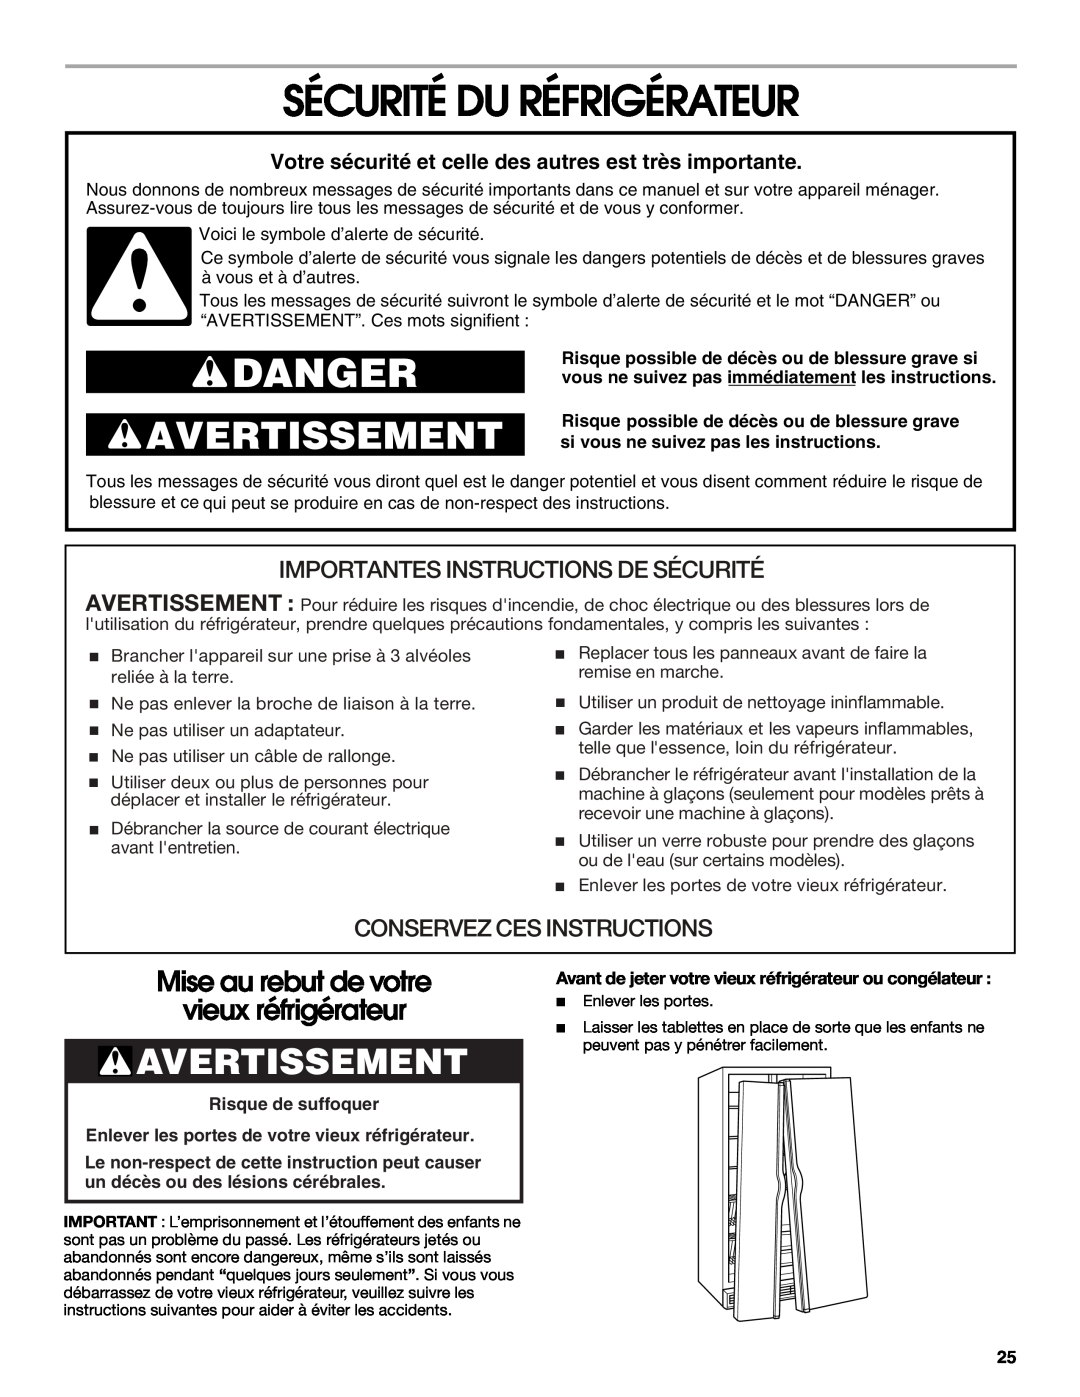 Whirlpool RS22AQXKQ02 manual Sécurité Du Réfrigérateur, Avertissement, Mise au rebut de votre vieux réfrigérateur, Danger 